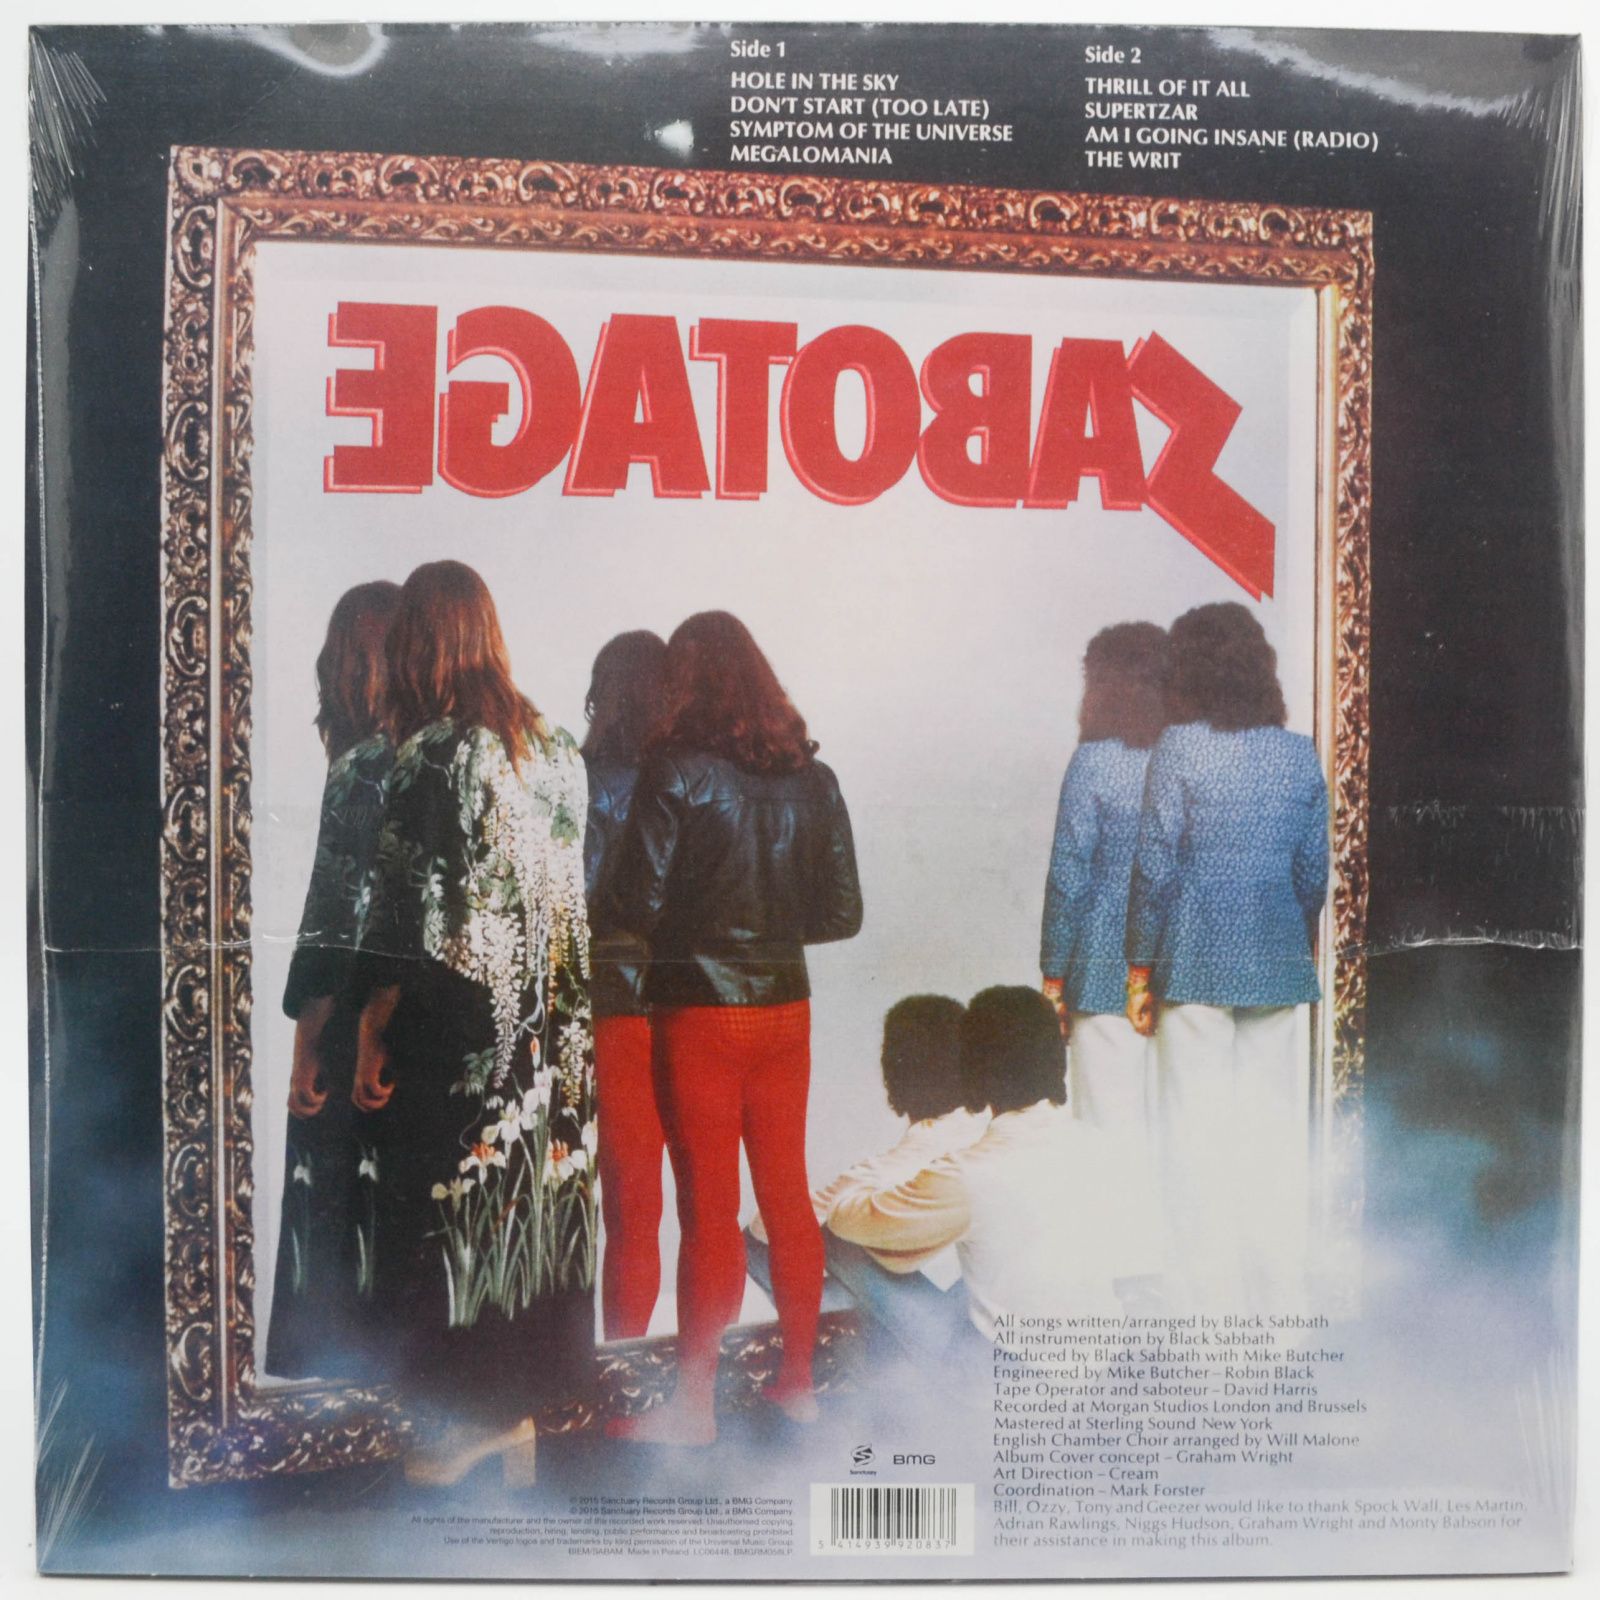 Black Sabbath — Sabotage, 1975